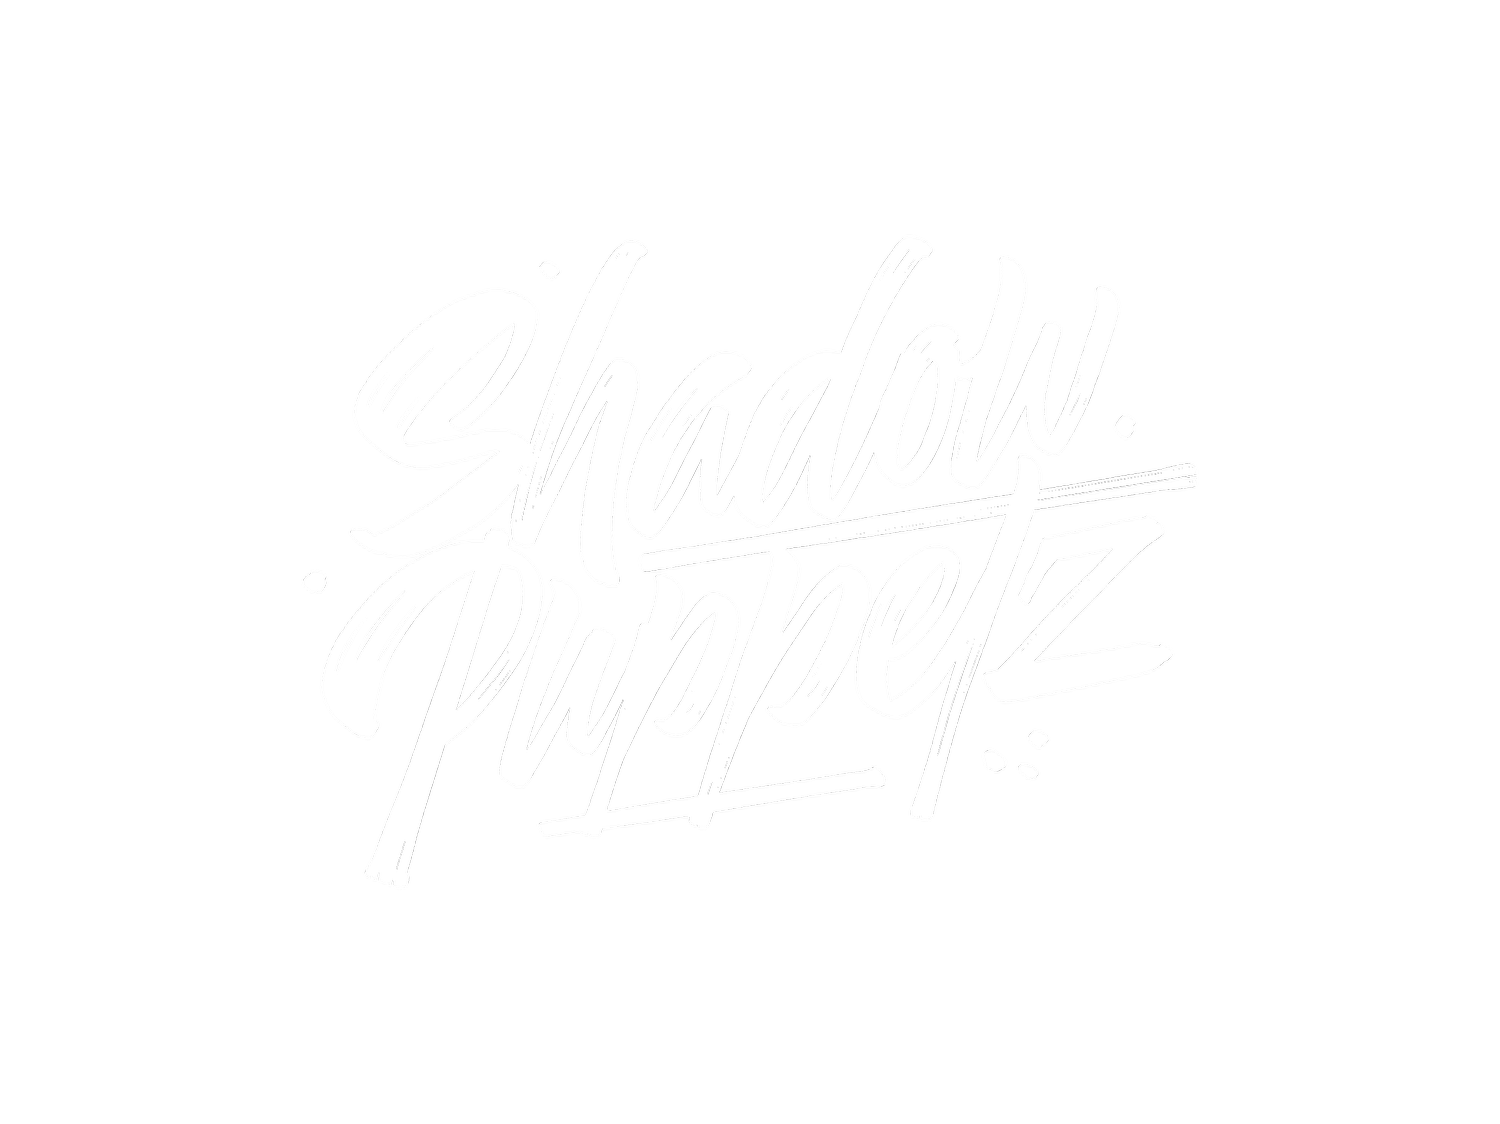 Shadow Puppetz